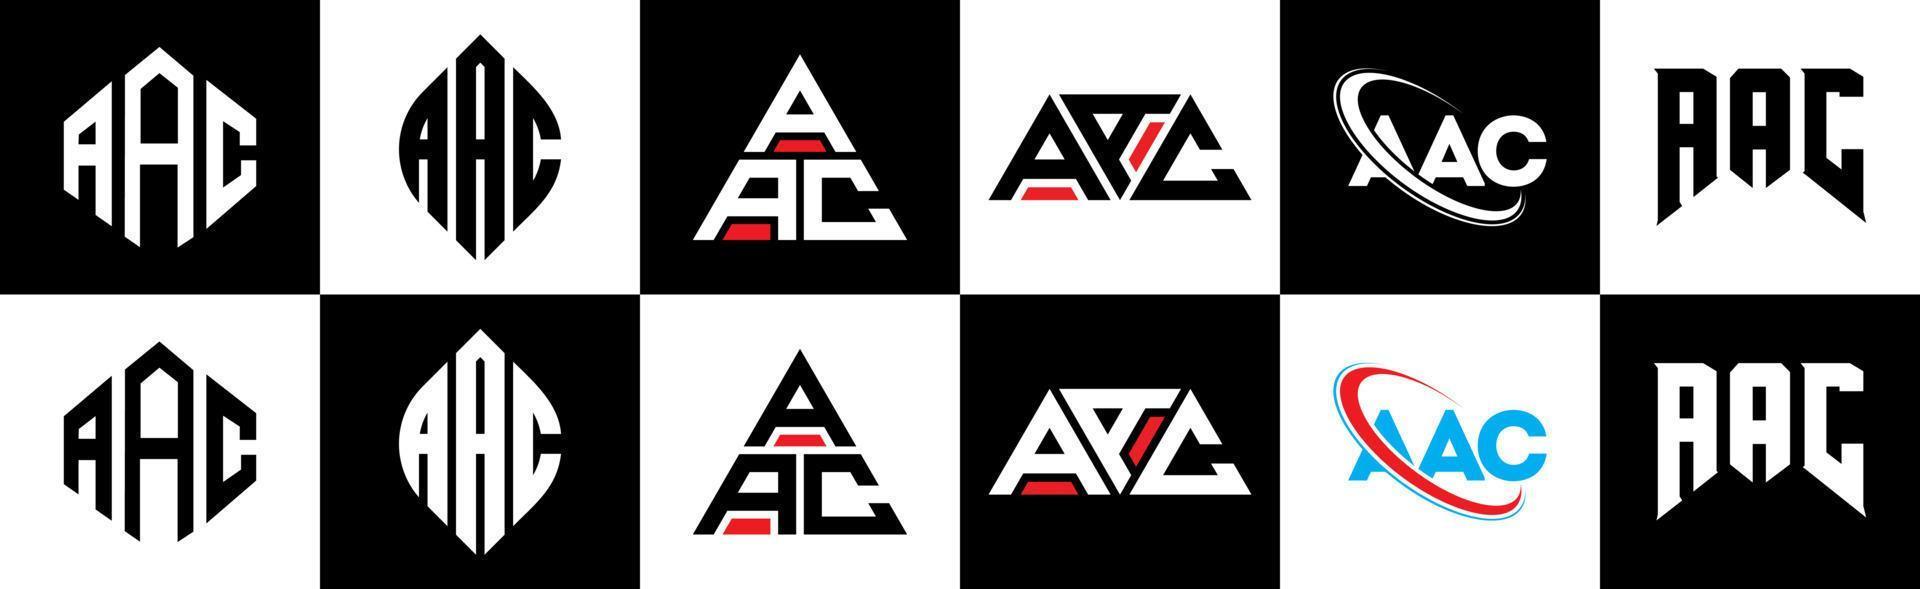 aac brief logo ontwerp in zes stijl. aac veelhoek, cirkel, driehoek, zeshoek, vlak en gemakkelijk stijl met zwart en wit kleur variatie brief logo reeks in een tekengebied. aac minimalistische en klassiek logo vector